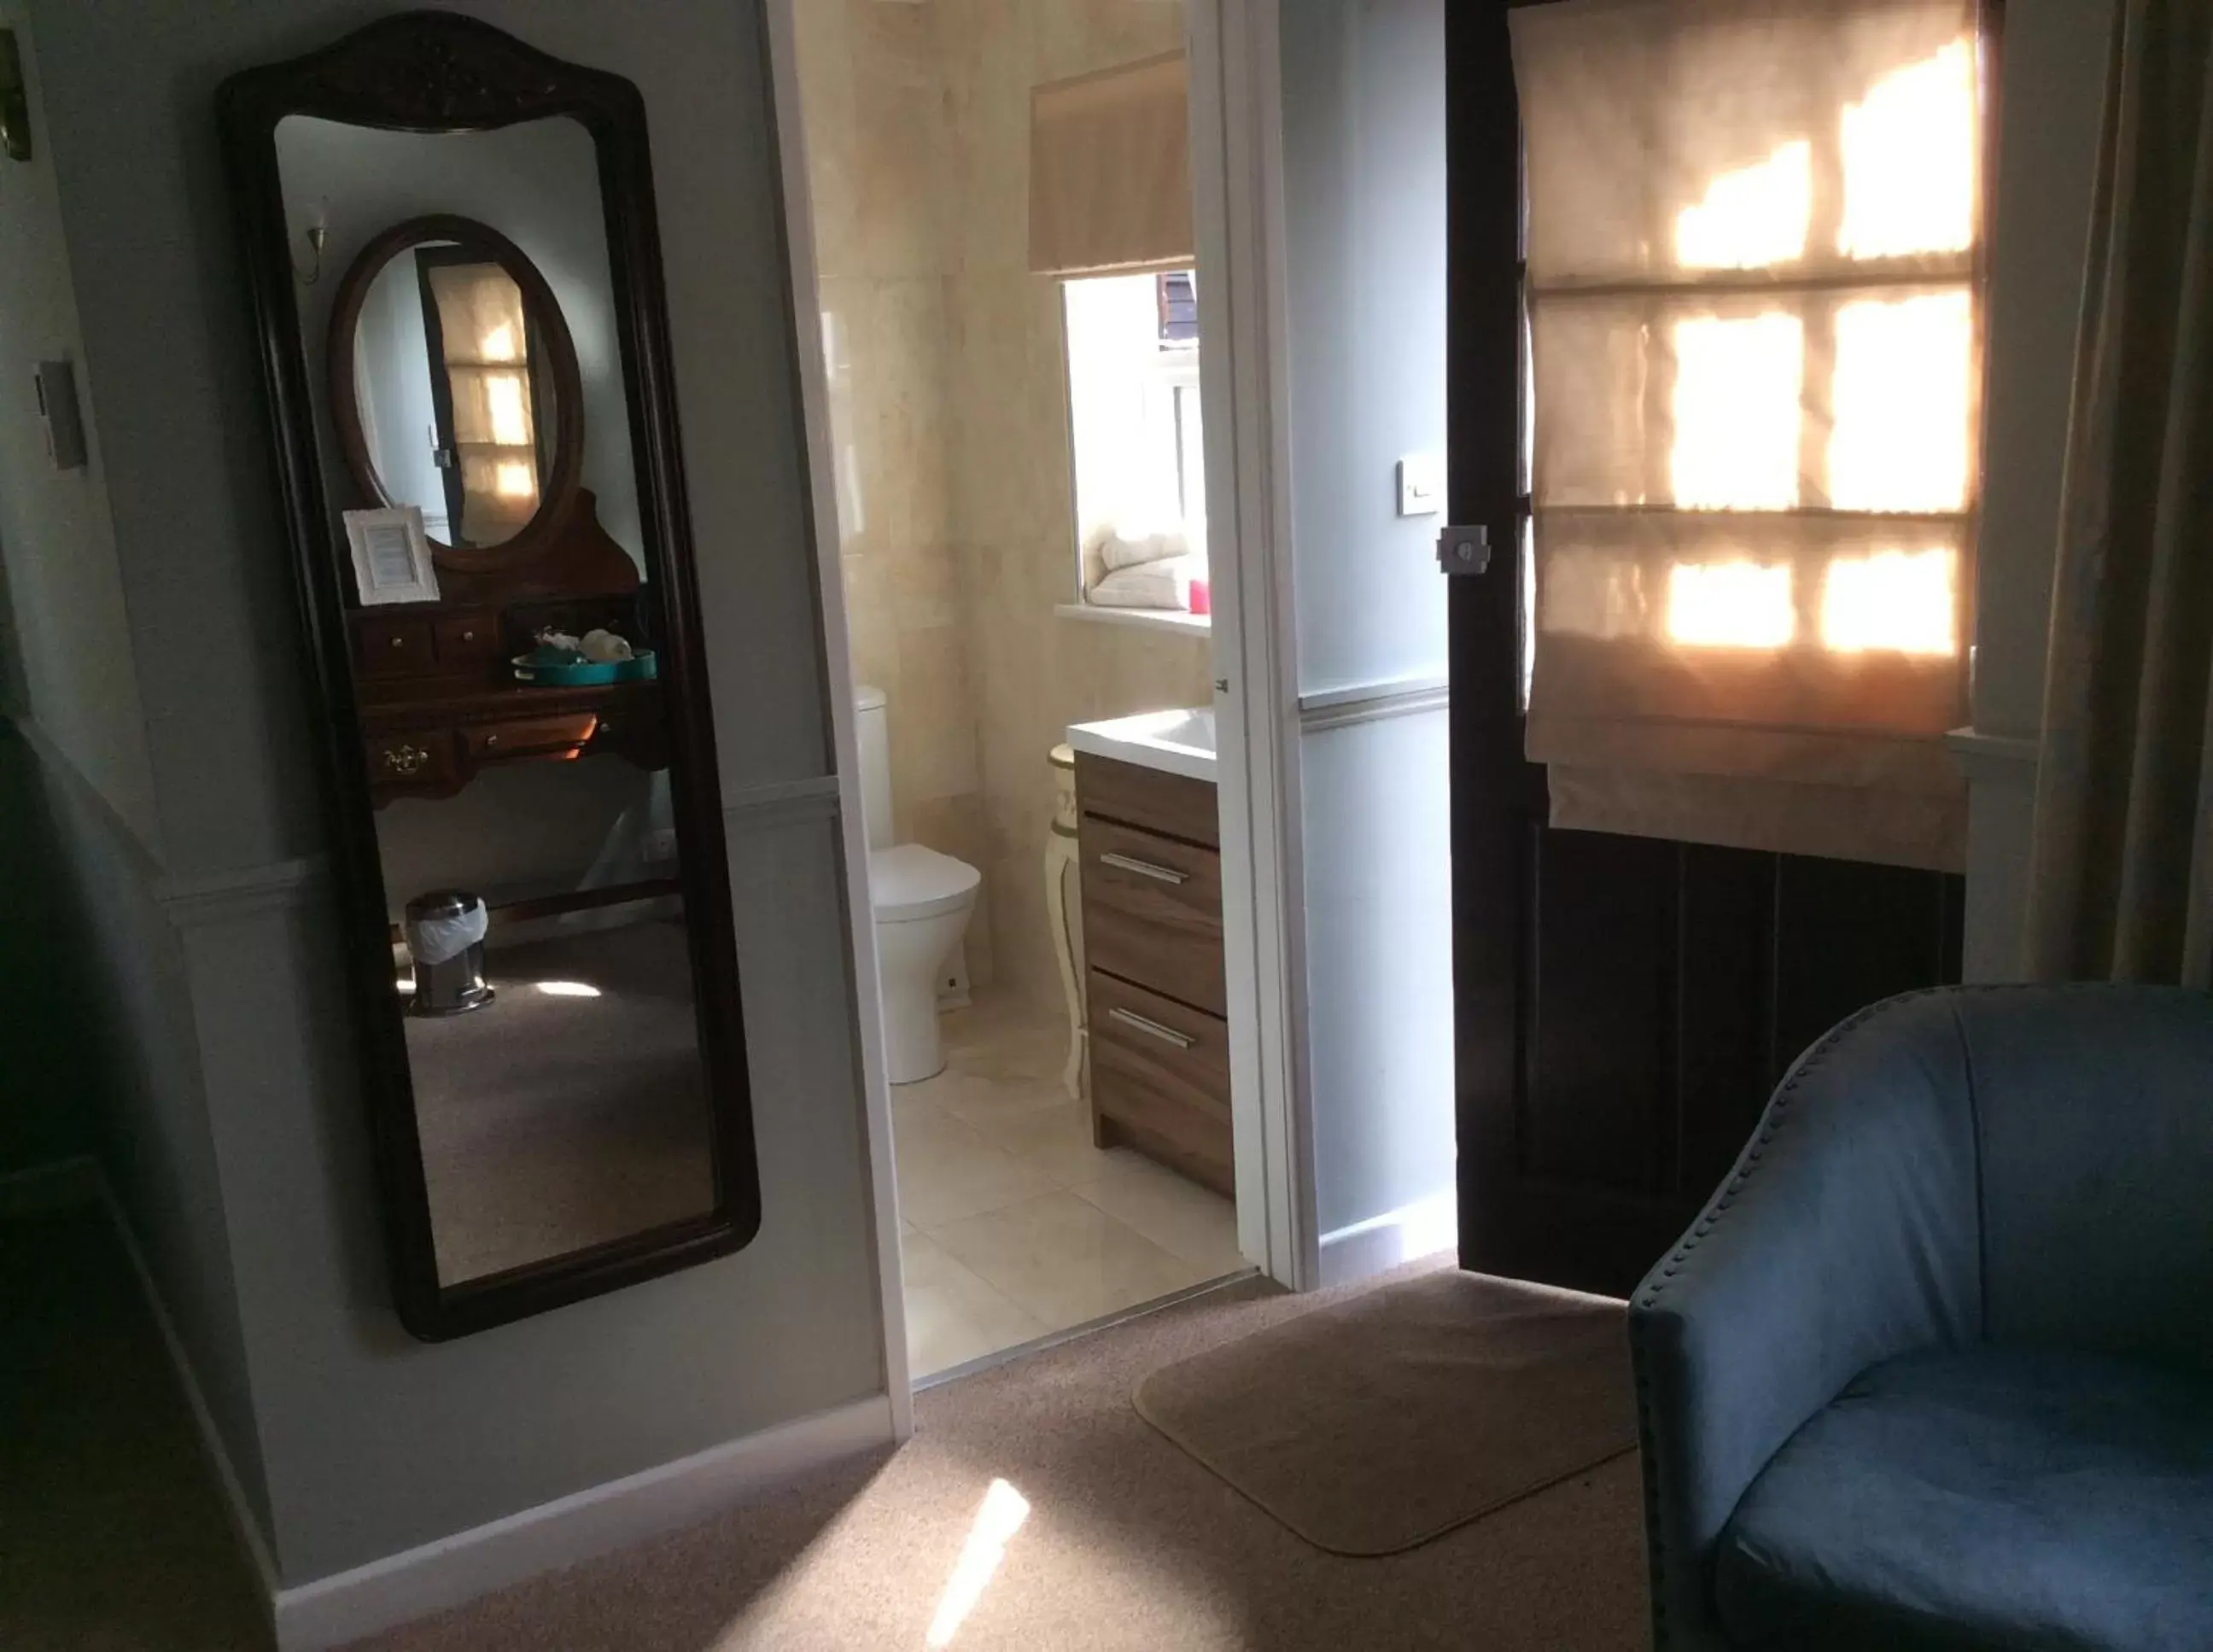 Bedroom, Bathroom in Swan Motel